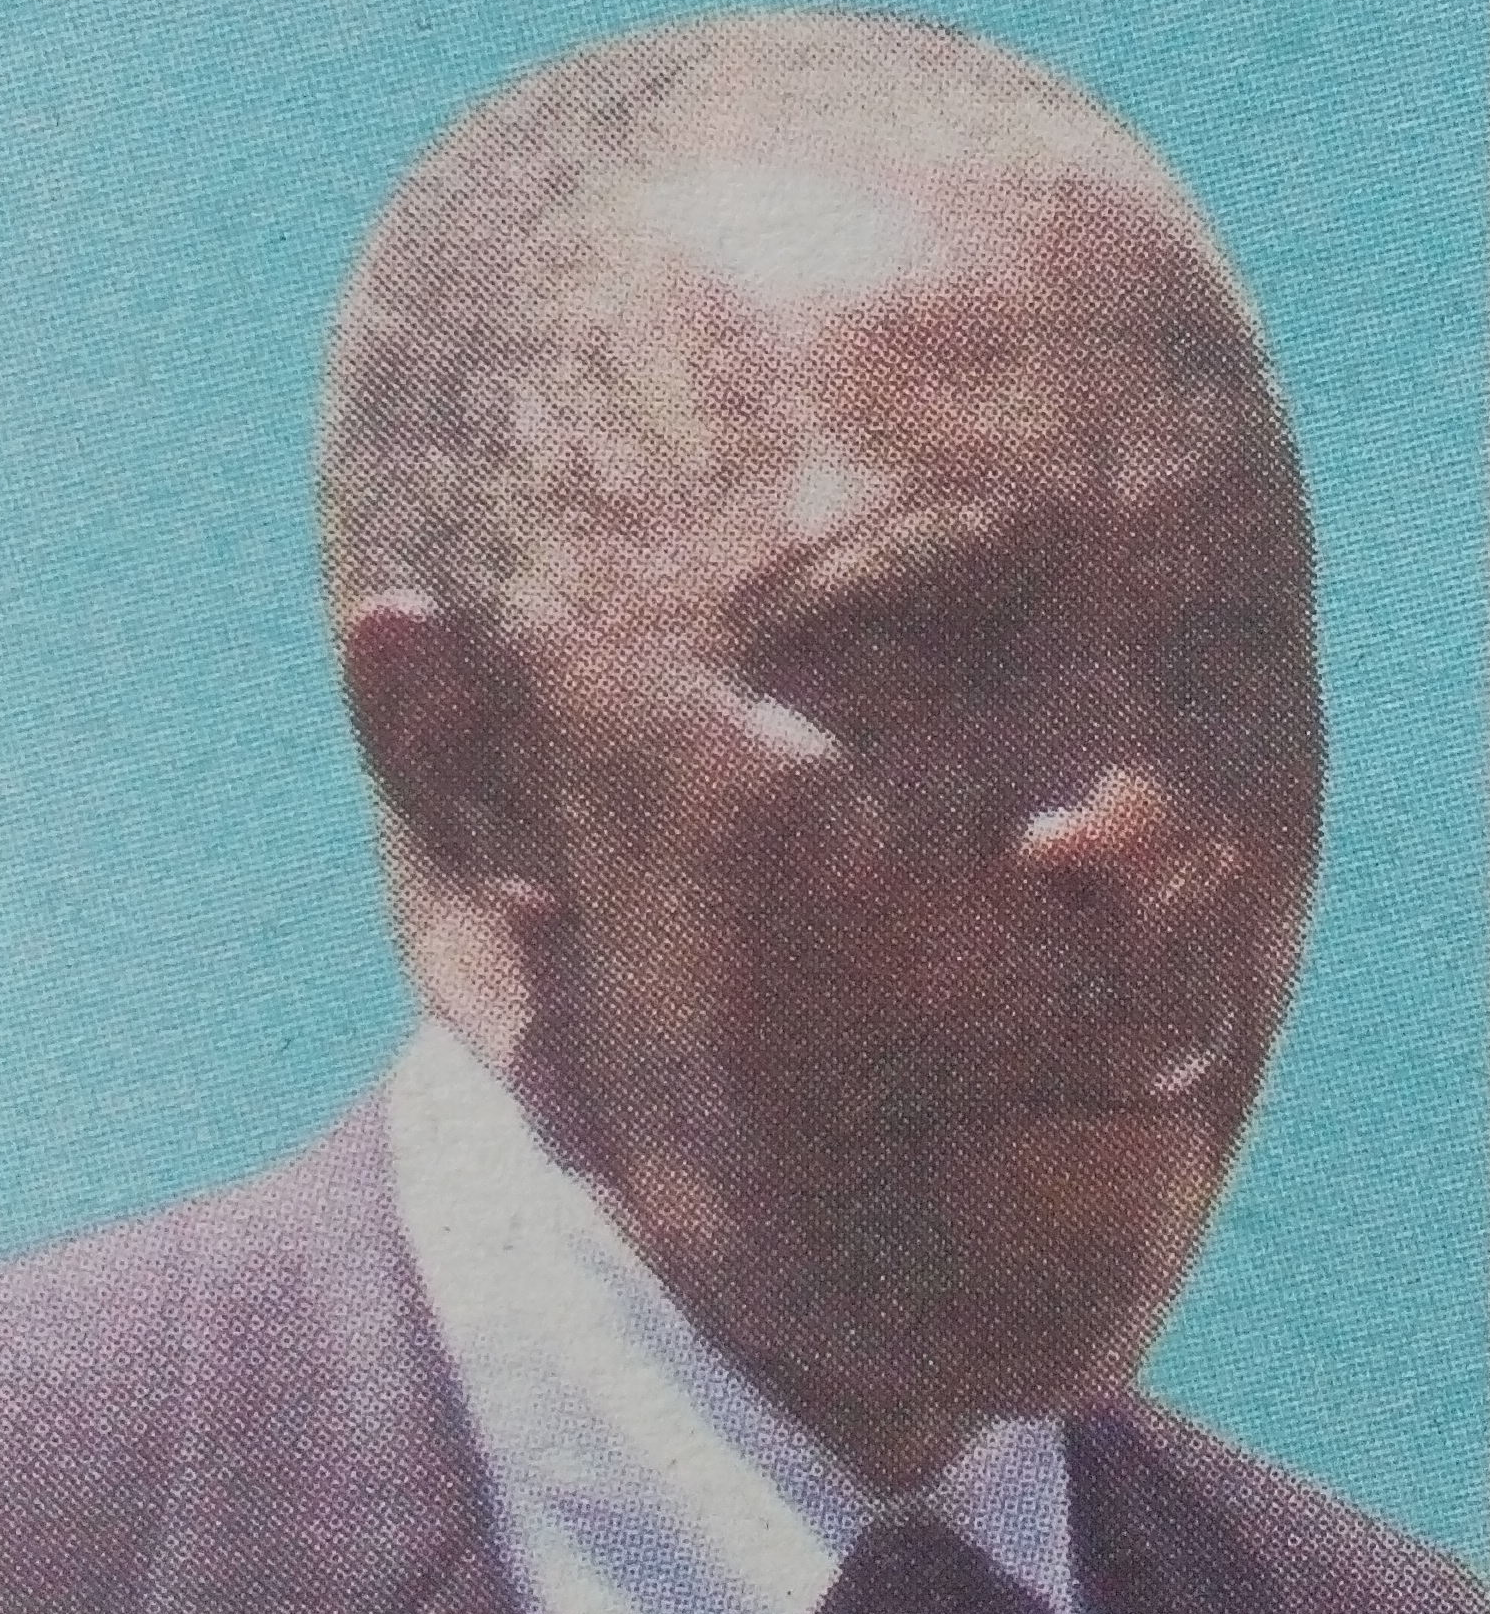 Obituary Image of Baranabas Githinji Kiboi